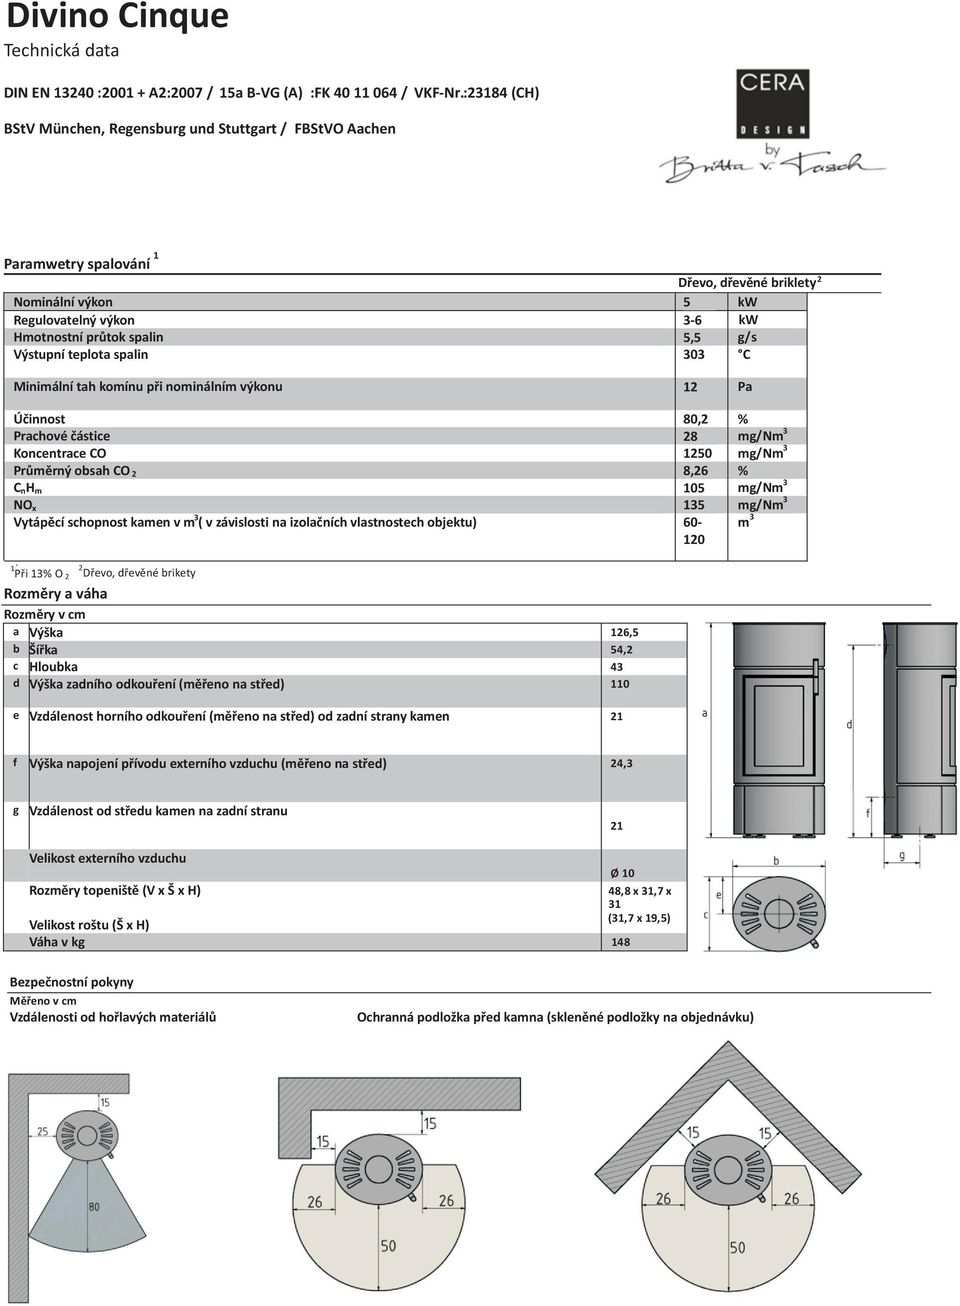 Výstupní teplota spalin 303 C Minimální tah komínu při nominálním výkonu 12 Pa Účinnost 80,2 % Prachové částice 28 mg/nm 3 Koncentrace CO 1250 mg/nm 3 Průměrný obsah CO 2 8,26 % C nh m 105 mg/nm 3 NO